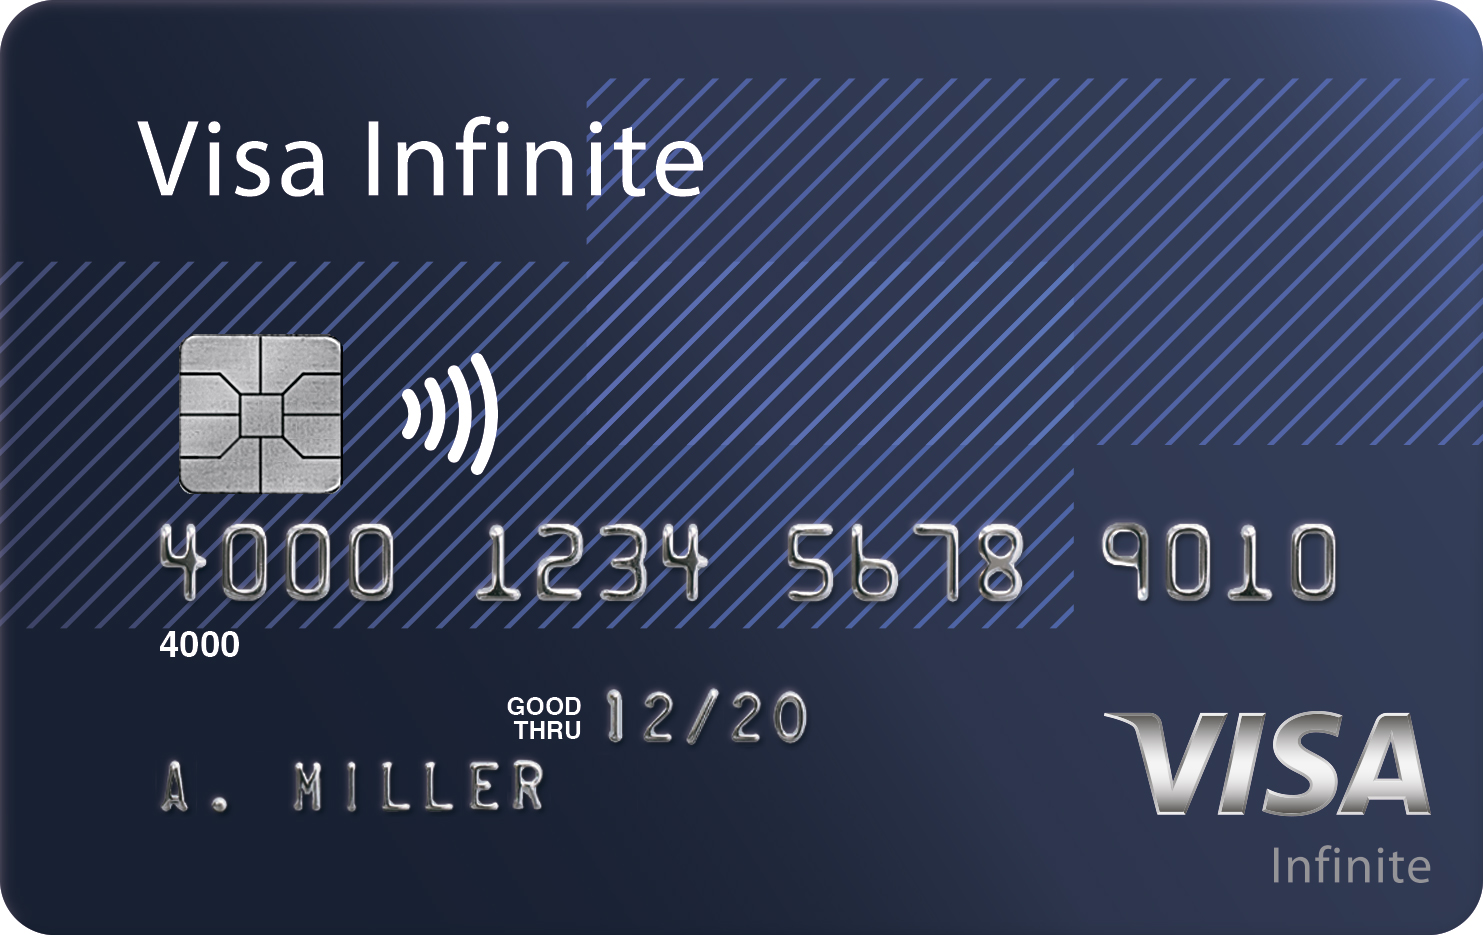 Интернет и звонки в международном роуминге за 200 рублей для премиальных карт Visa - Билайн Москва